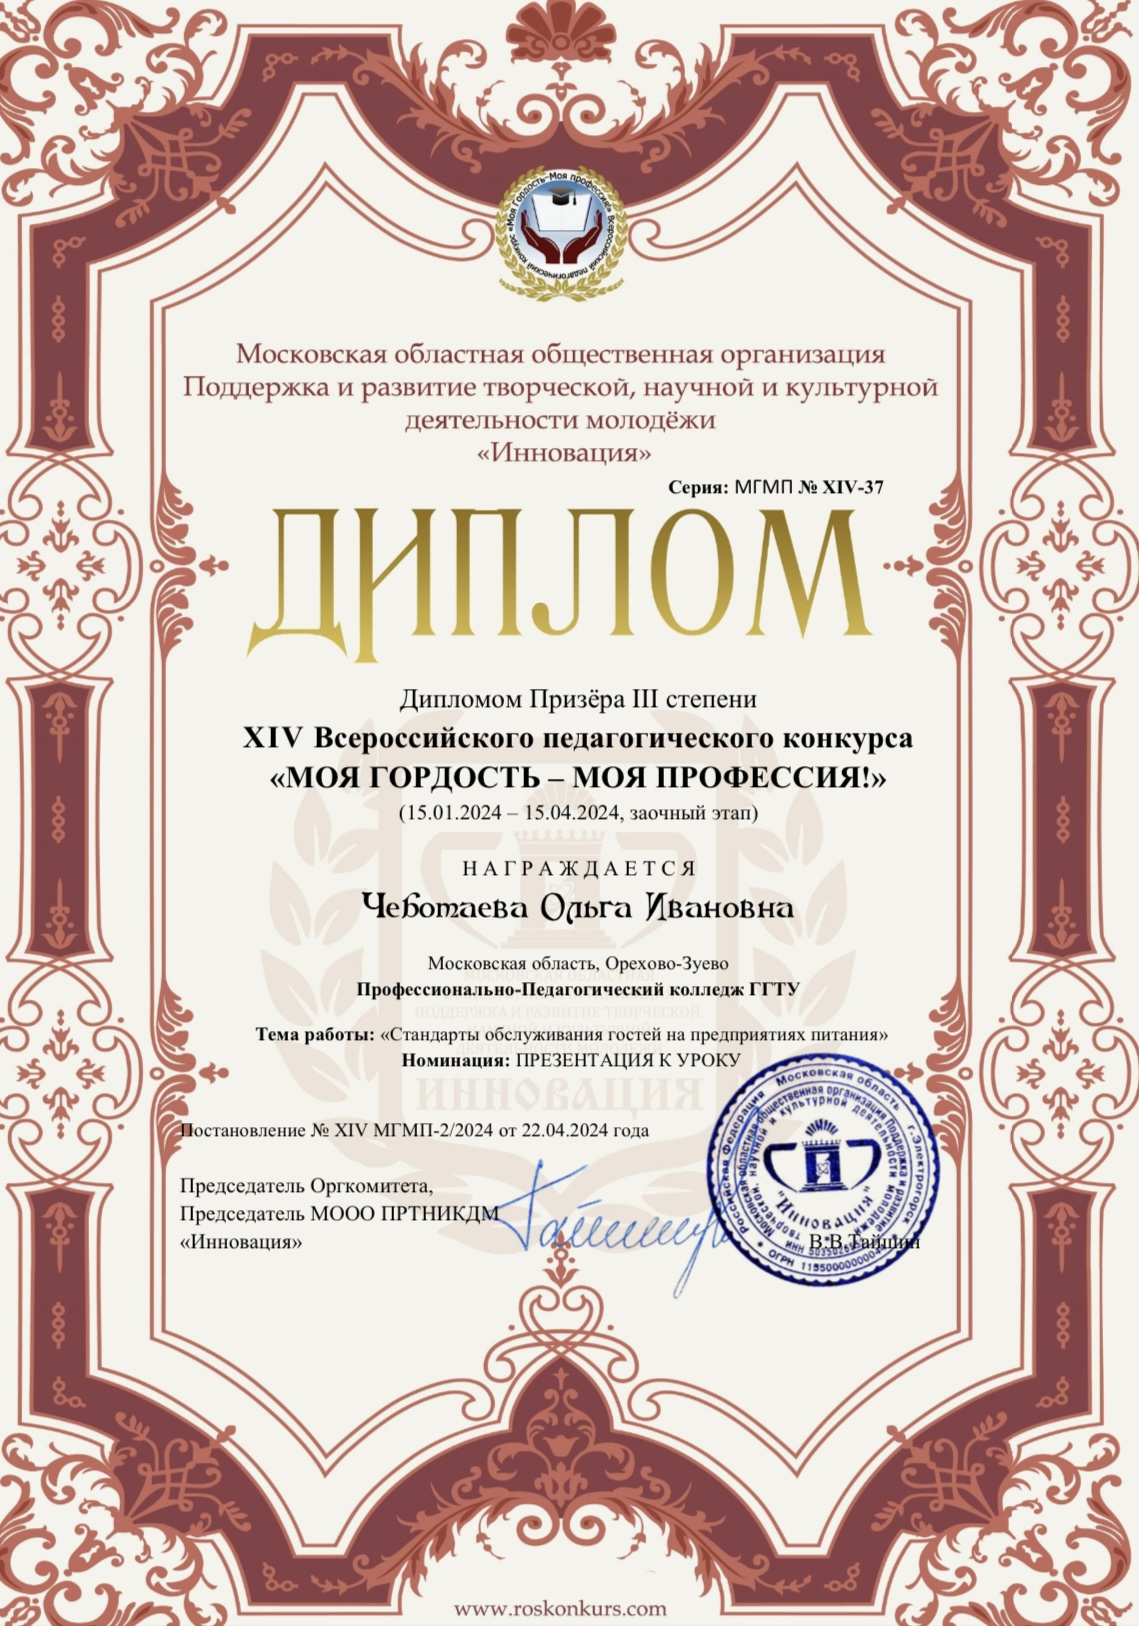 Участие в XIV Всероссийском педагогическом конкурсе «Моя Гордость-Моя профессия!»